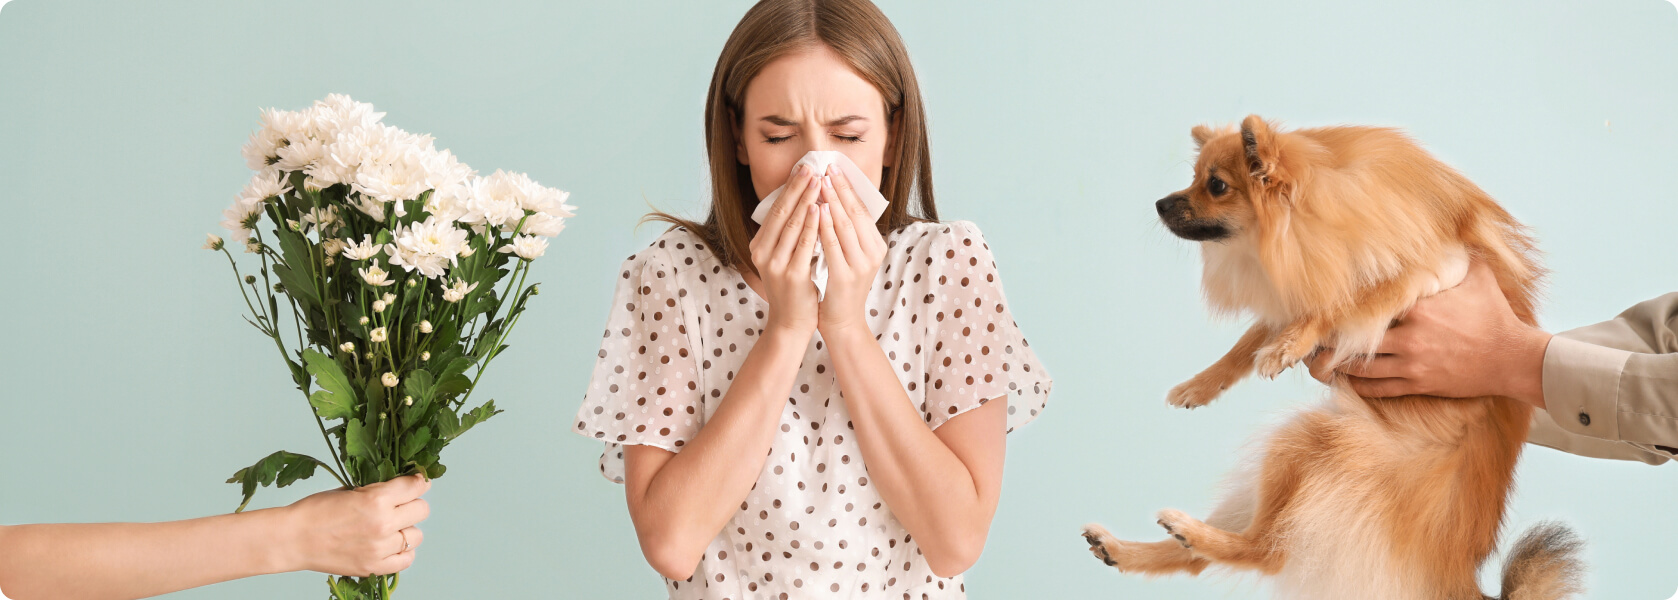 Allergie - Was versteht die Medizin unter einer Allergie?